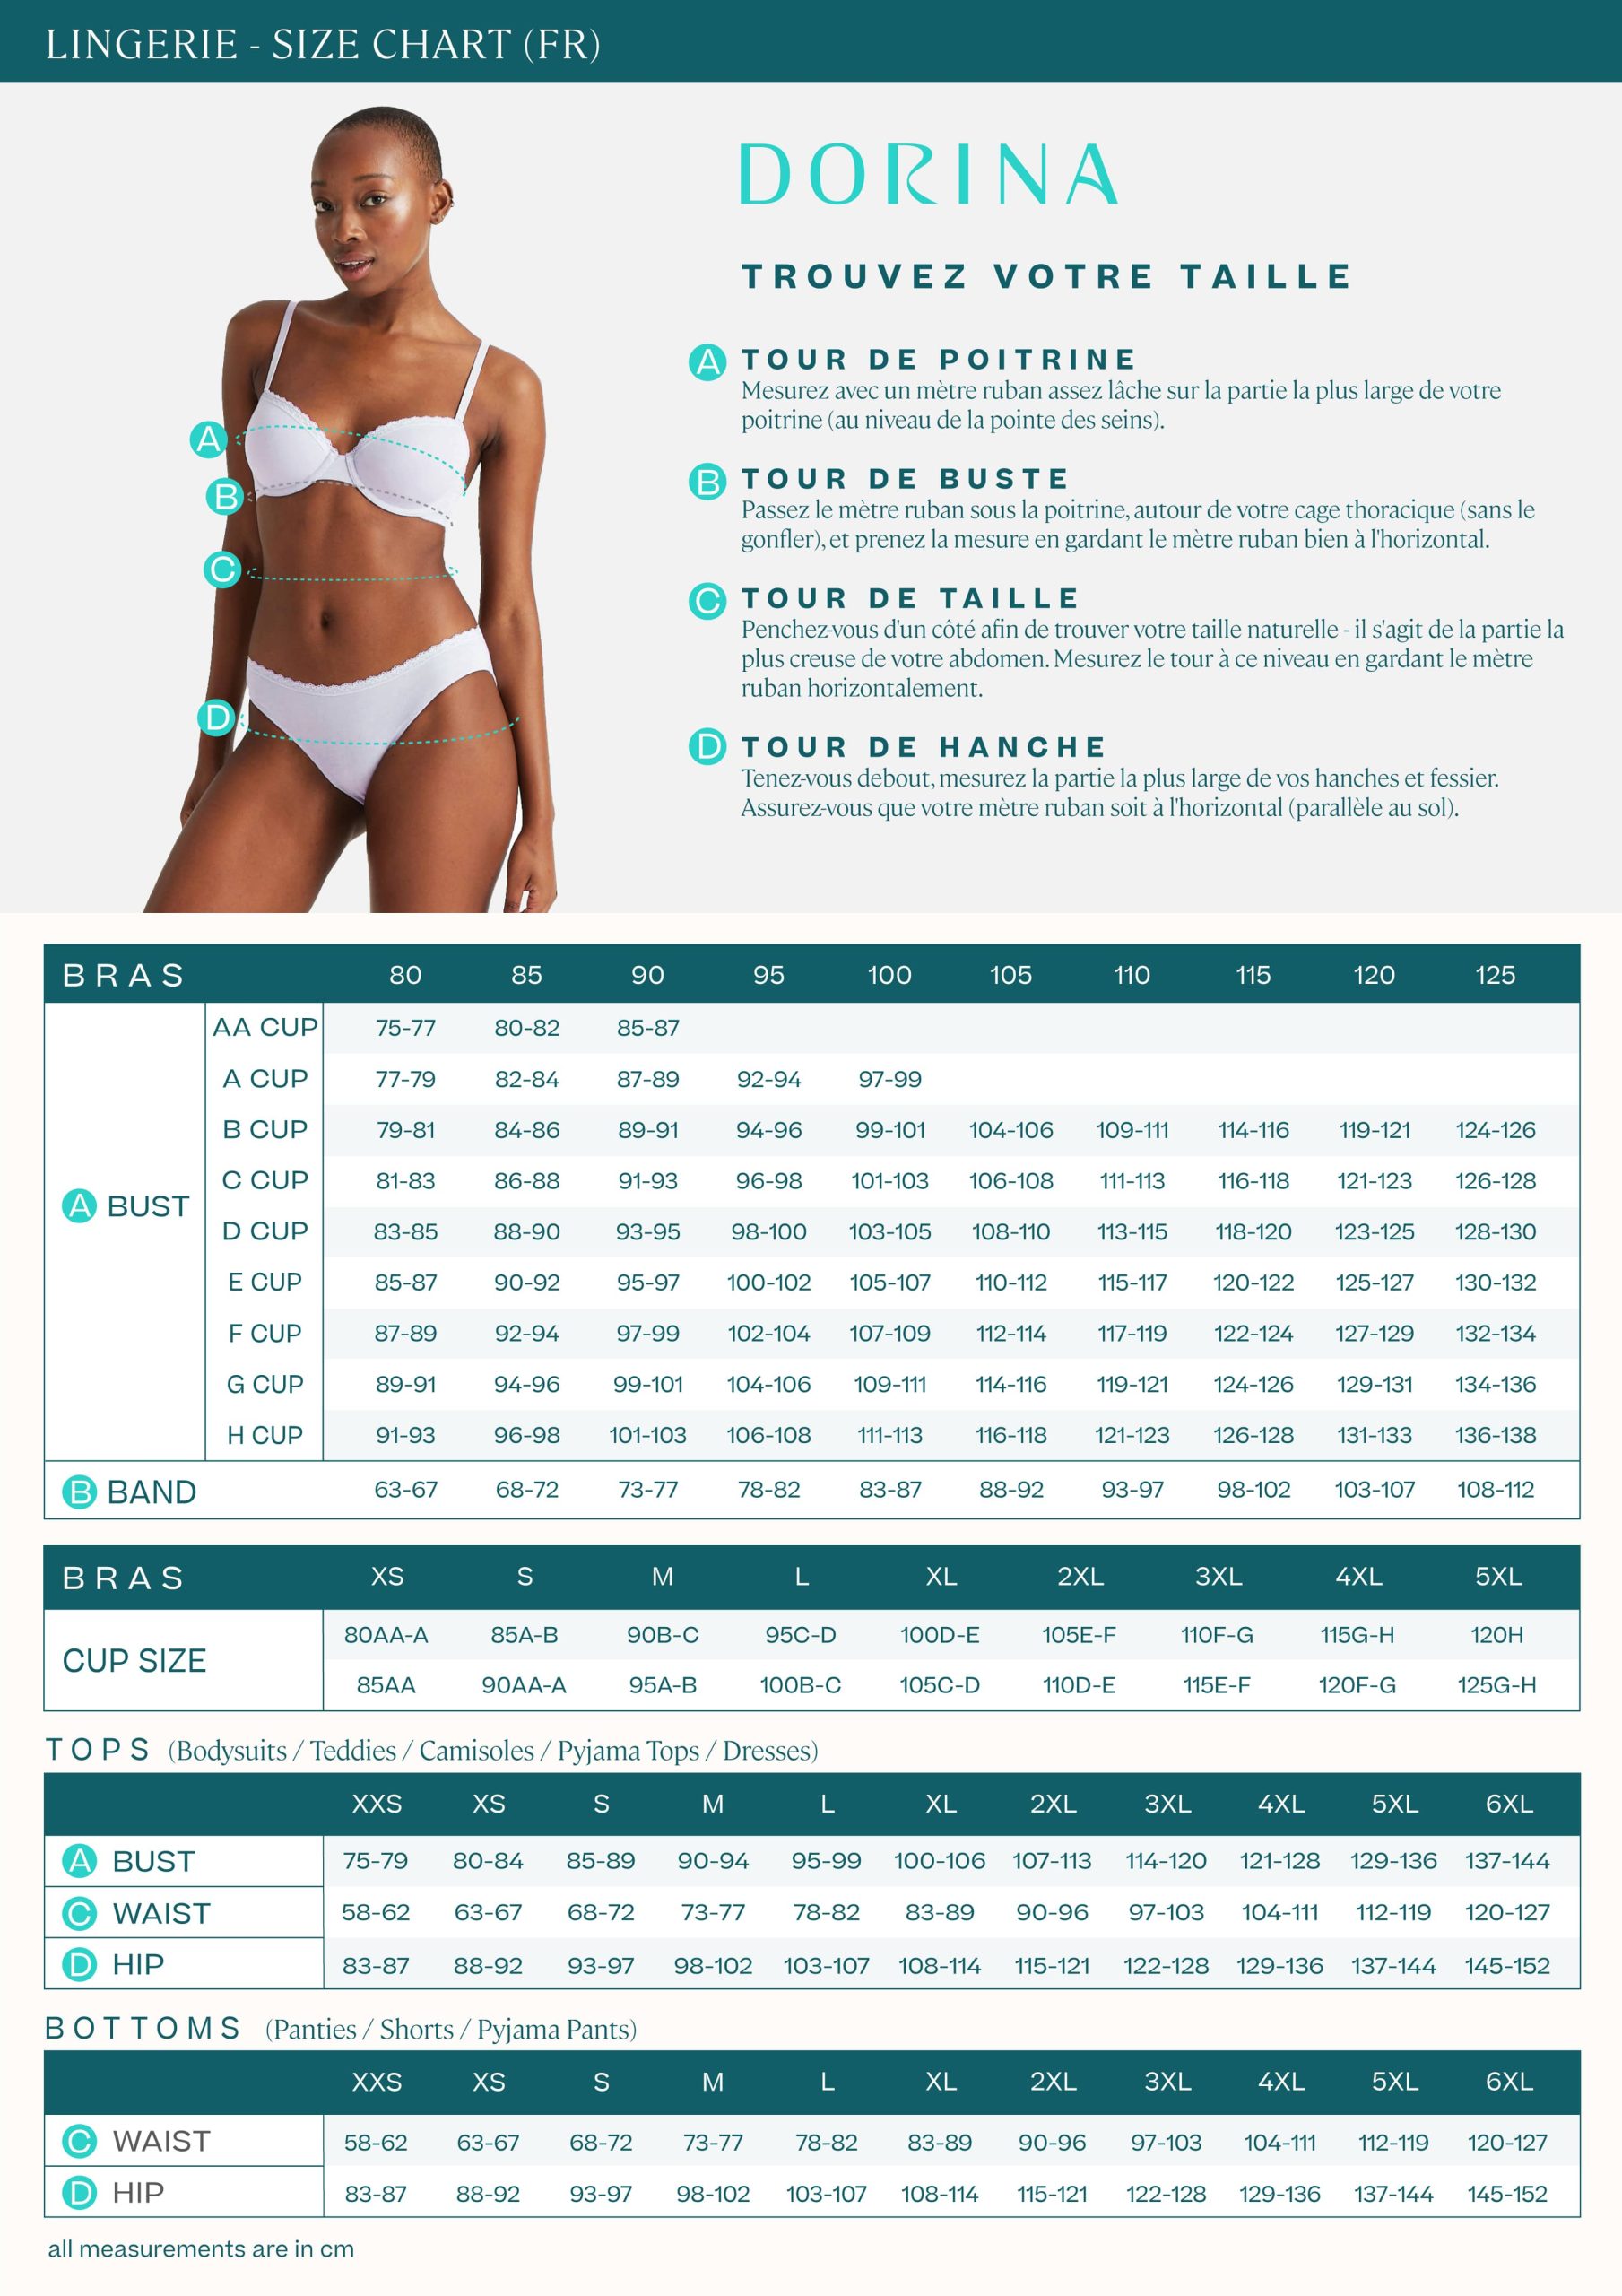 Basic Size Chart for Women's Lingerie